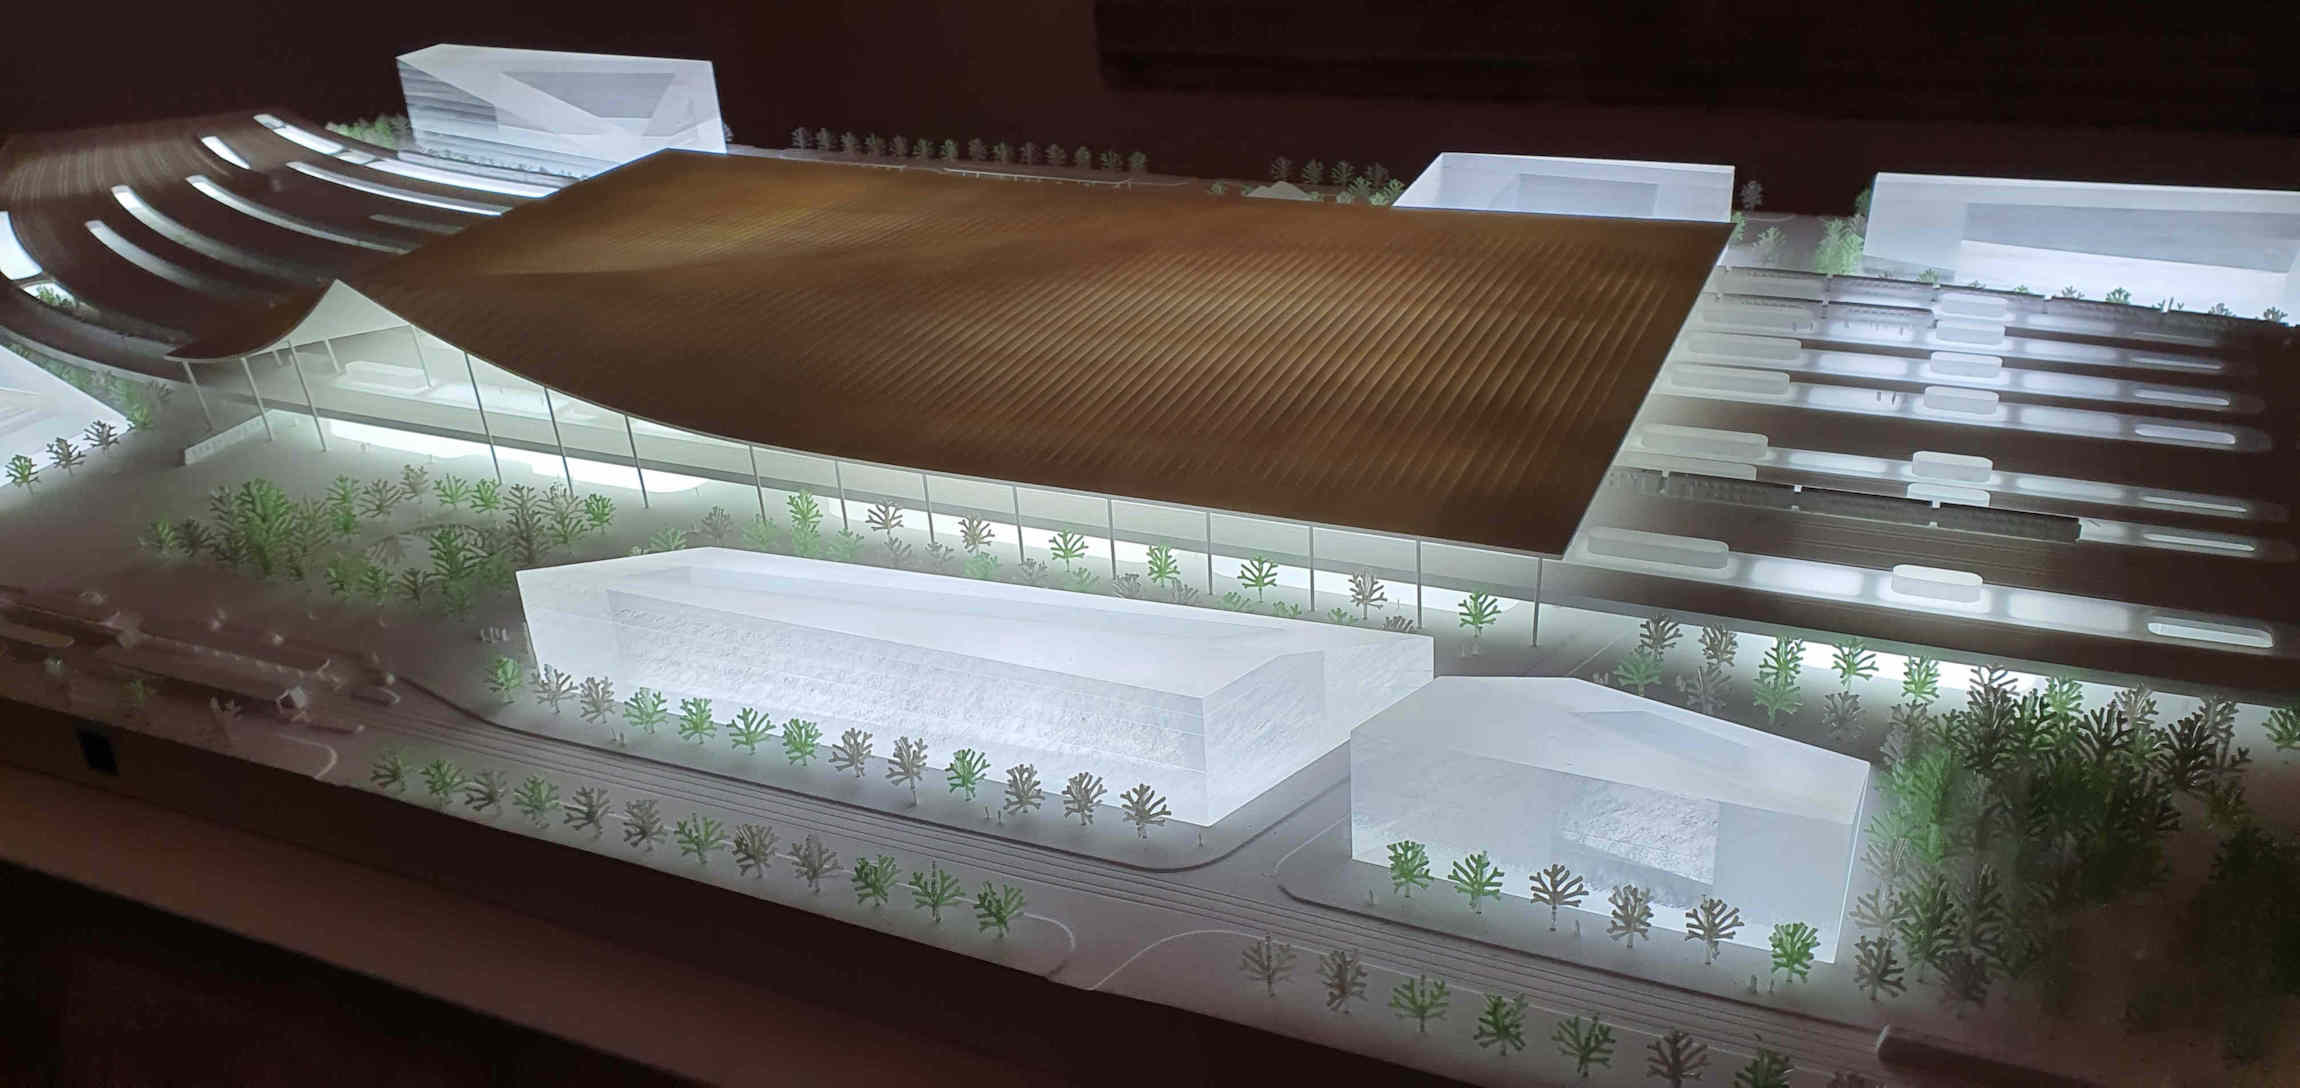 Vizualizace a model nového brněnského nádraží na výstavě v Křížové chodbě Nové radnice, říjen 2021